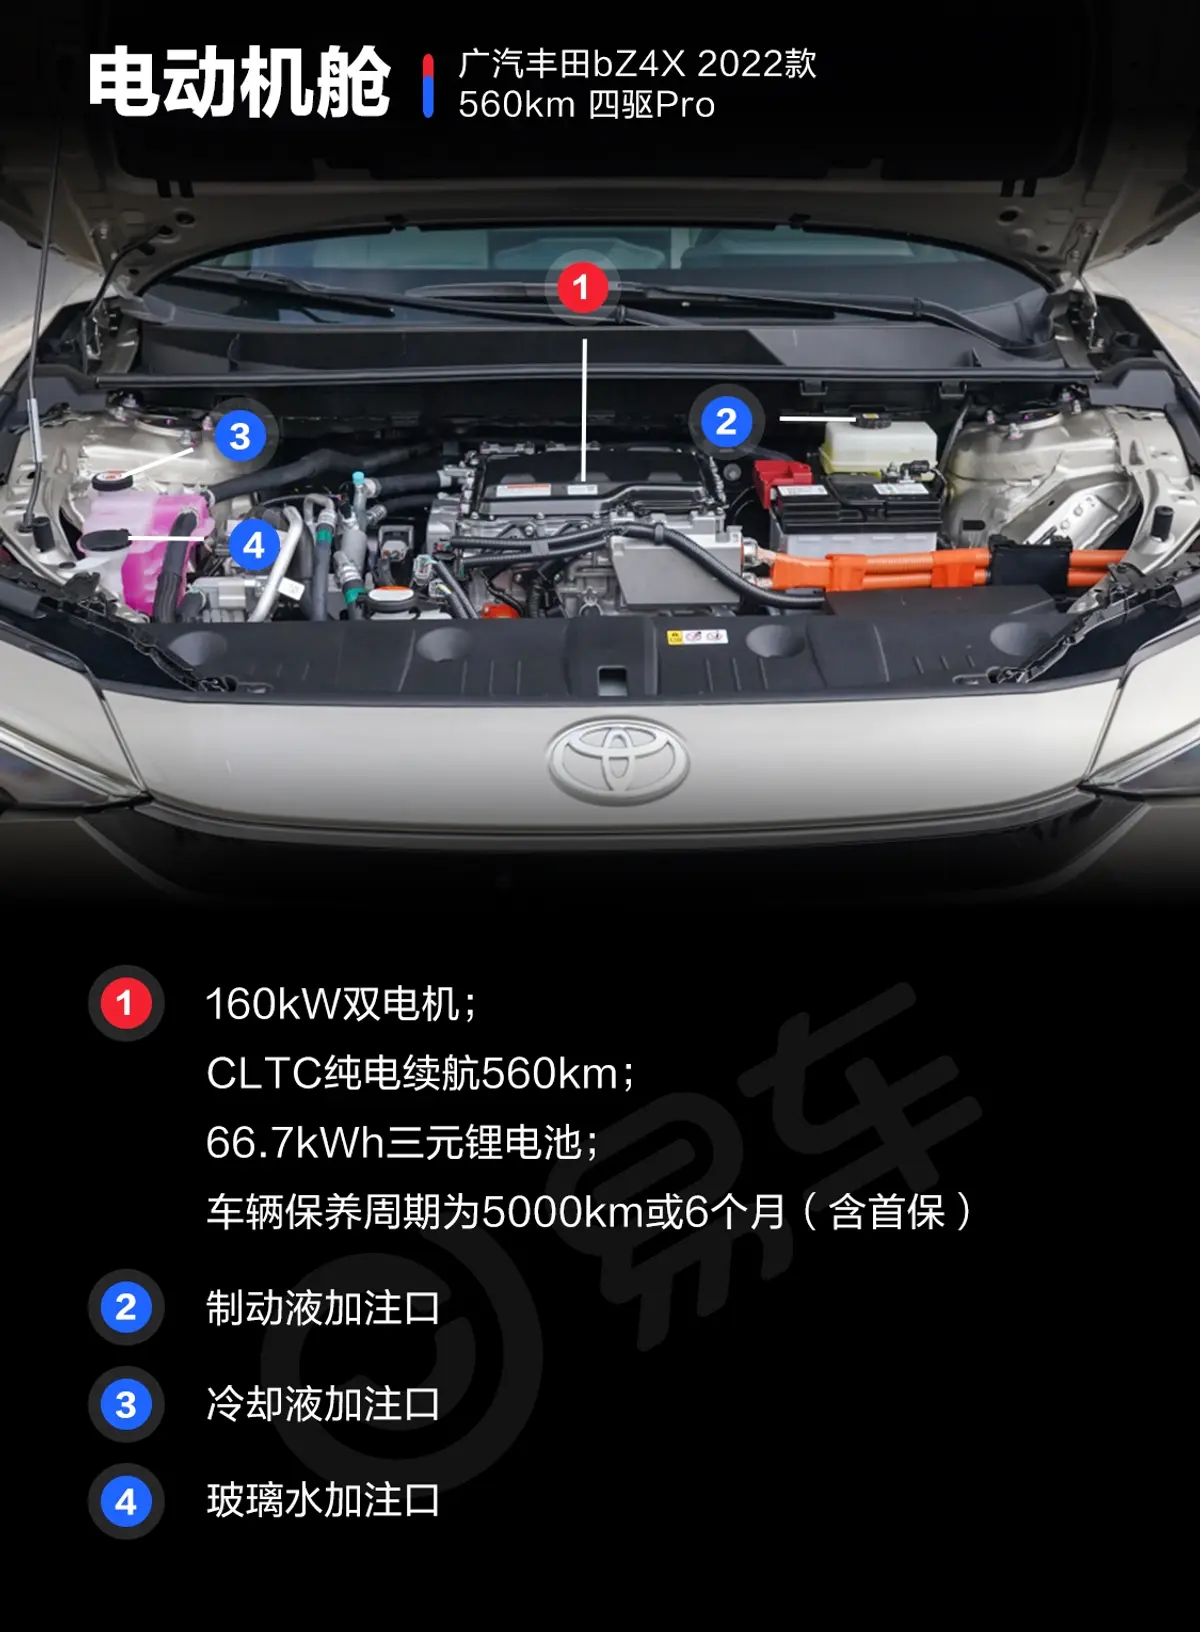 广汽丰田铂智4X560km 四驱Pro